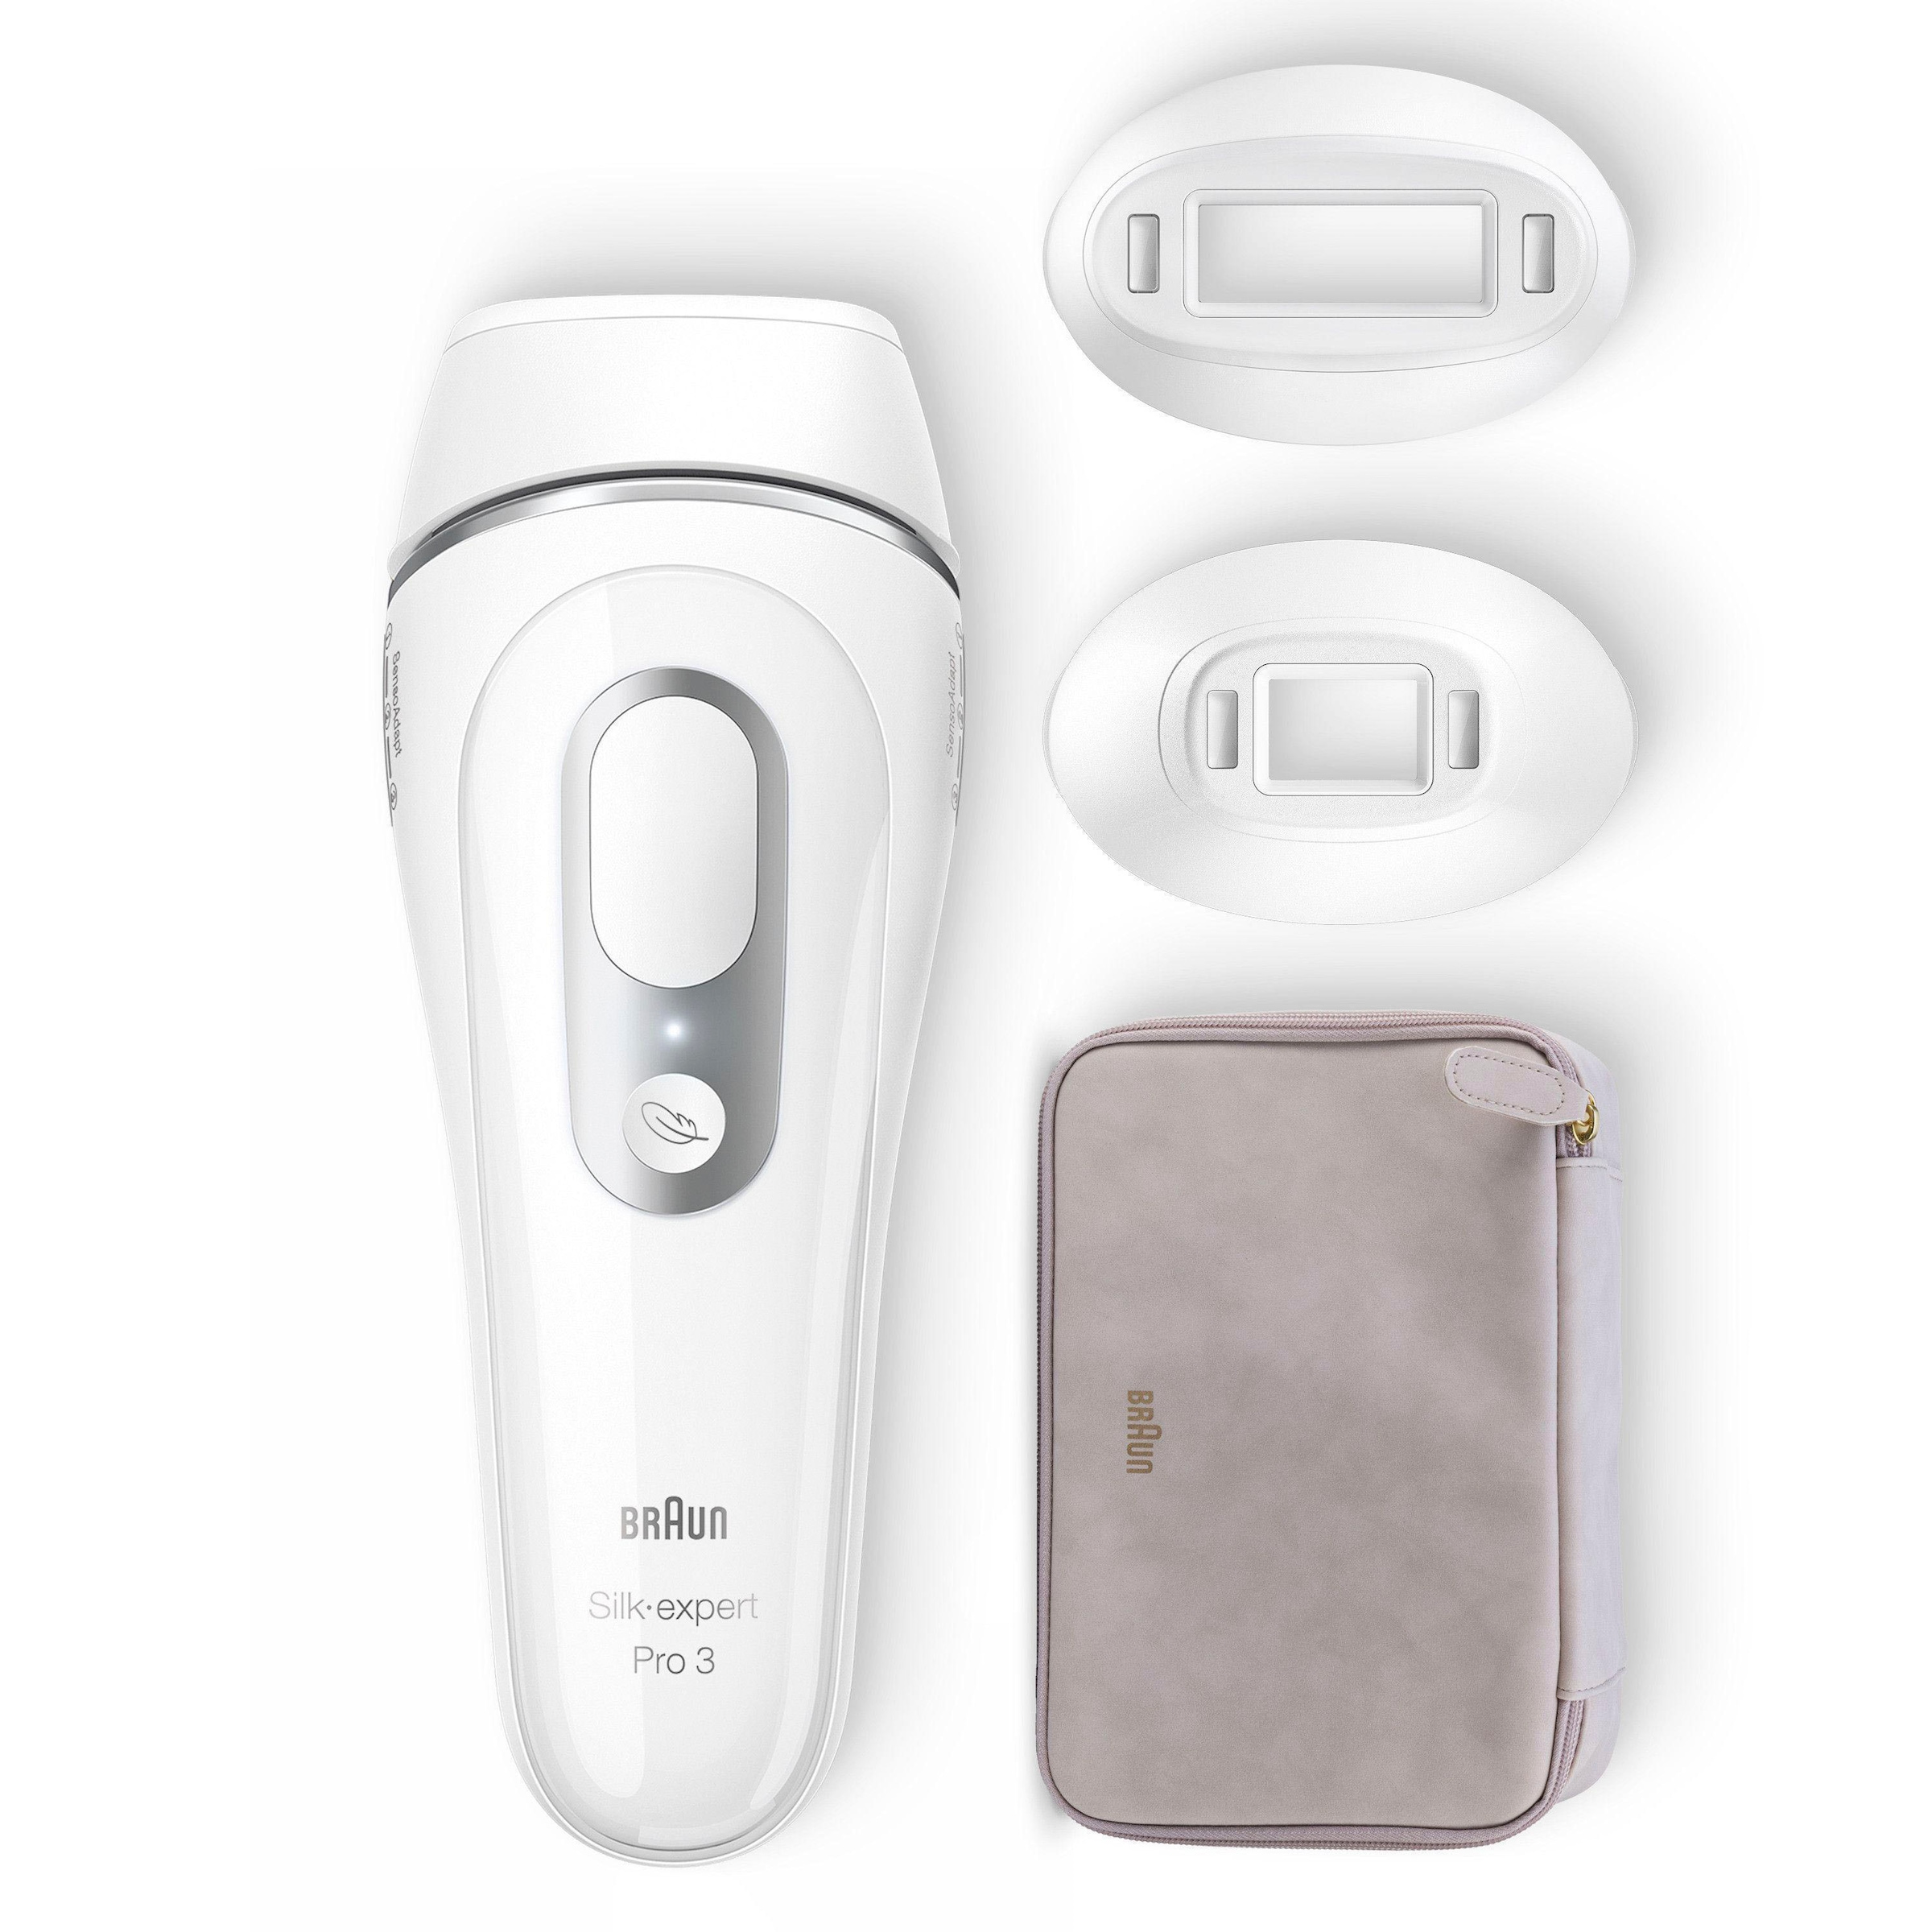 Braun 3 Pro-Technologie 300.000 ♕ PL3230«, IPL-Haarentferner auf Skin »Silk-Expert Lichtimpulse, versandkostenfrei Pro